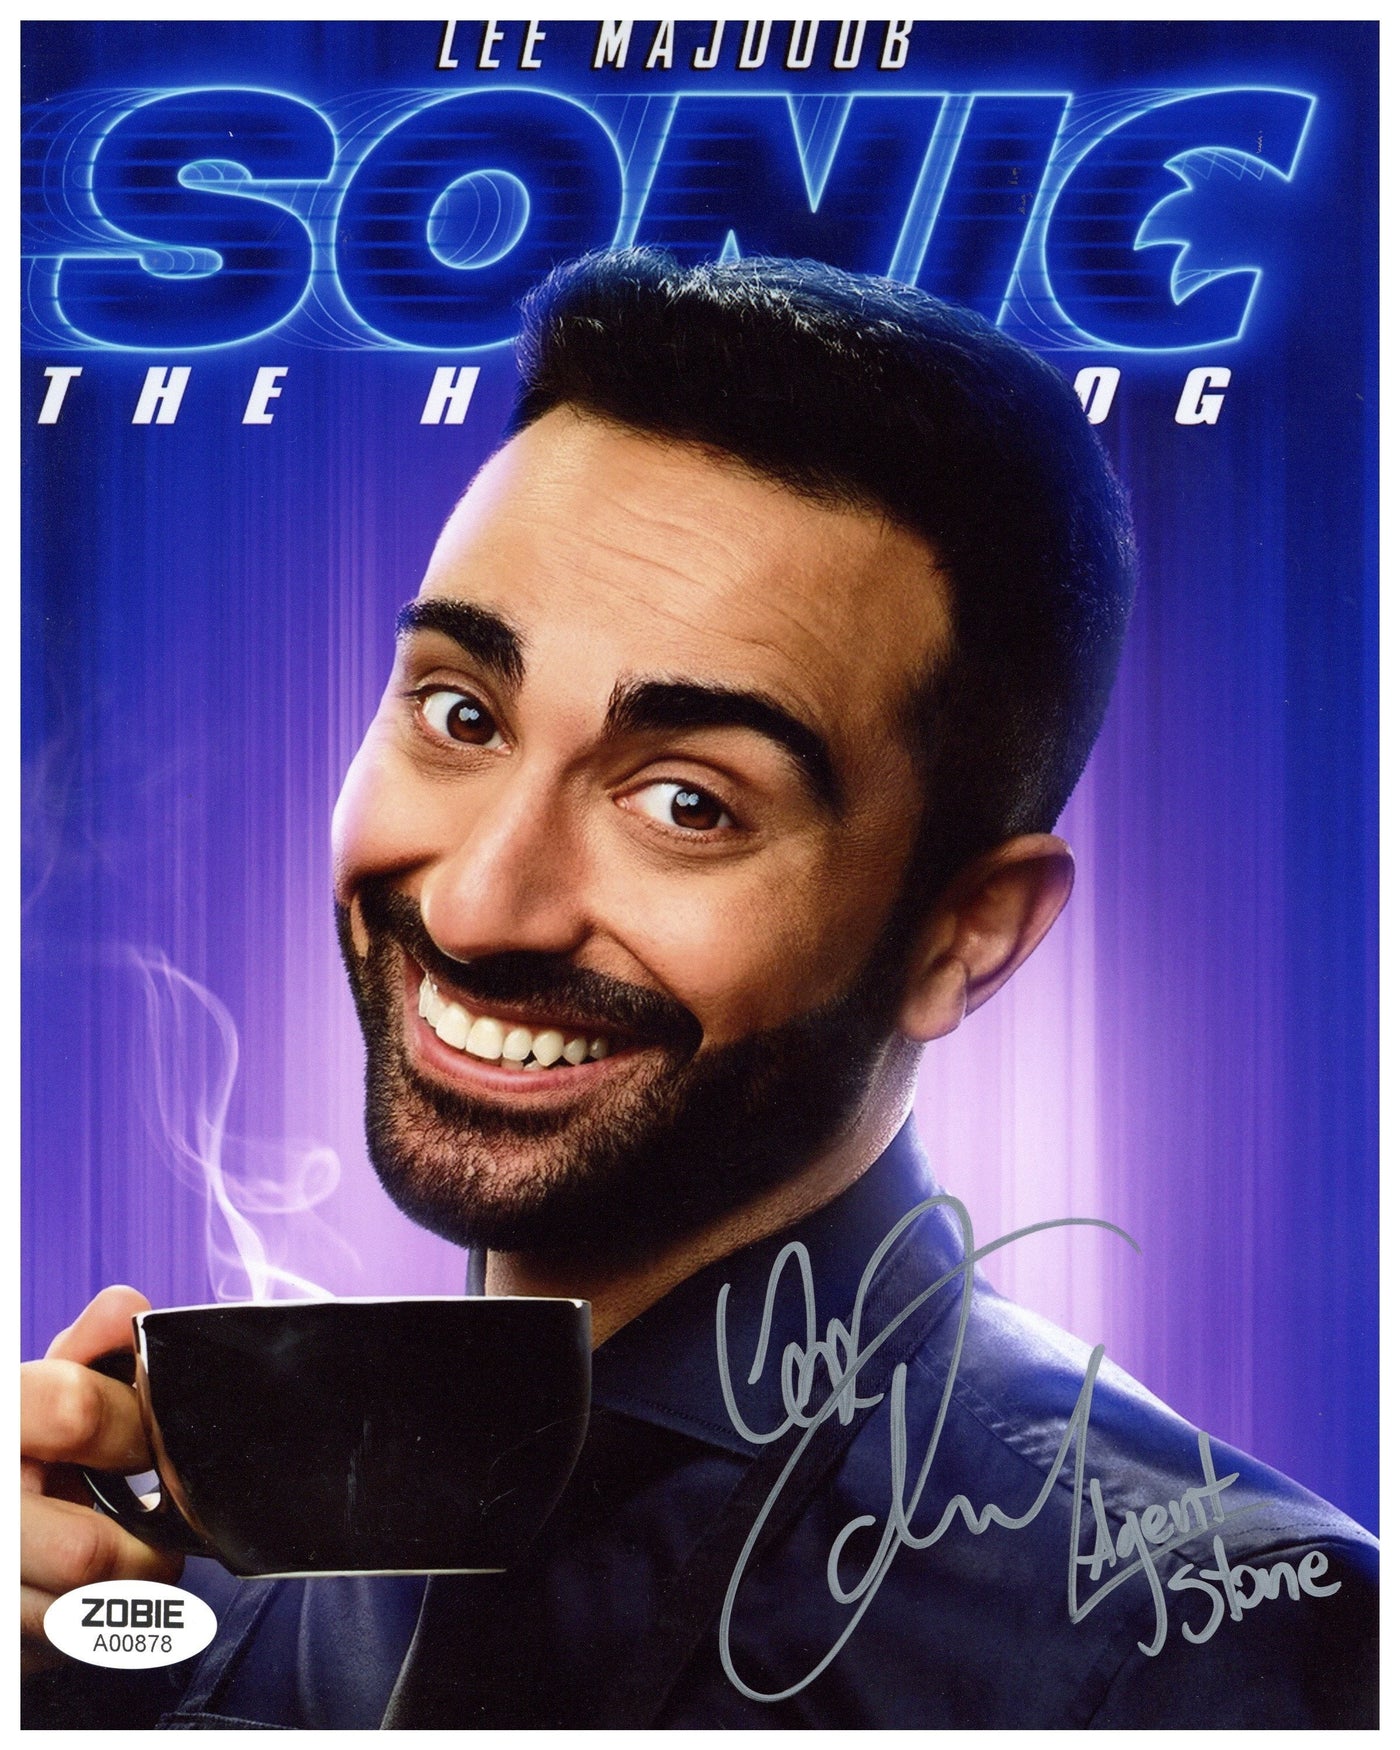 Lee Majdoub Signed 8x10 Photo Sonic the Hedgehog Autographed ZOBIE COA